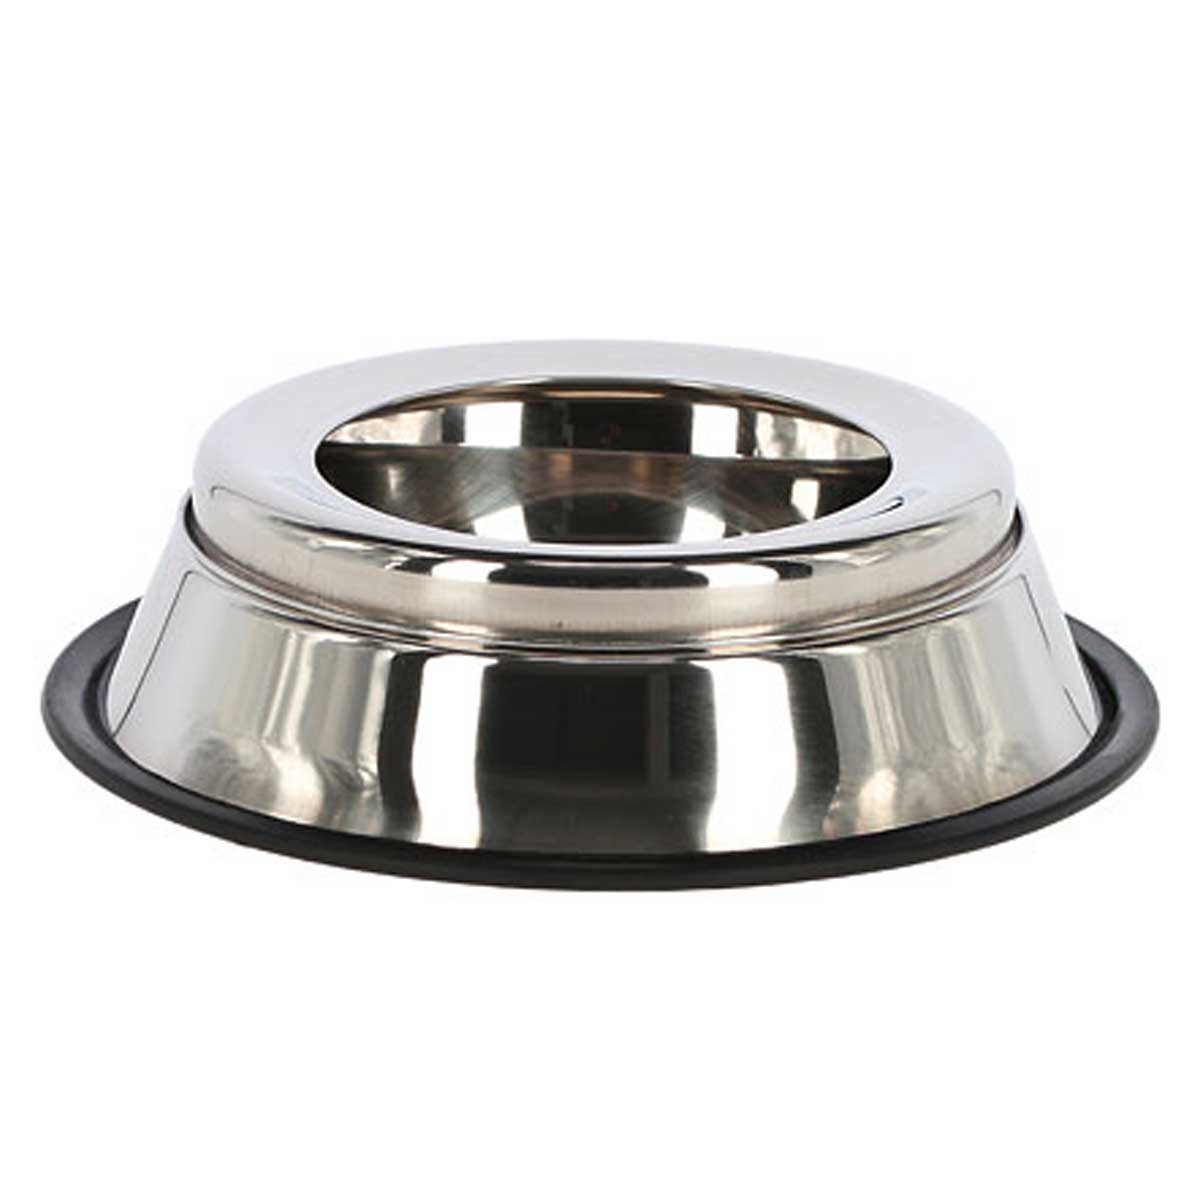 Stainless steel bowl Anti-Splash 900 ml